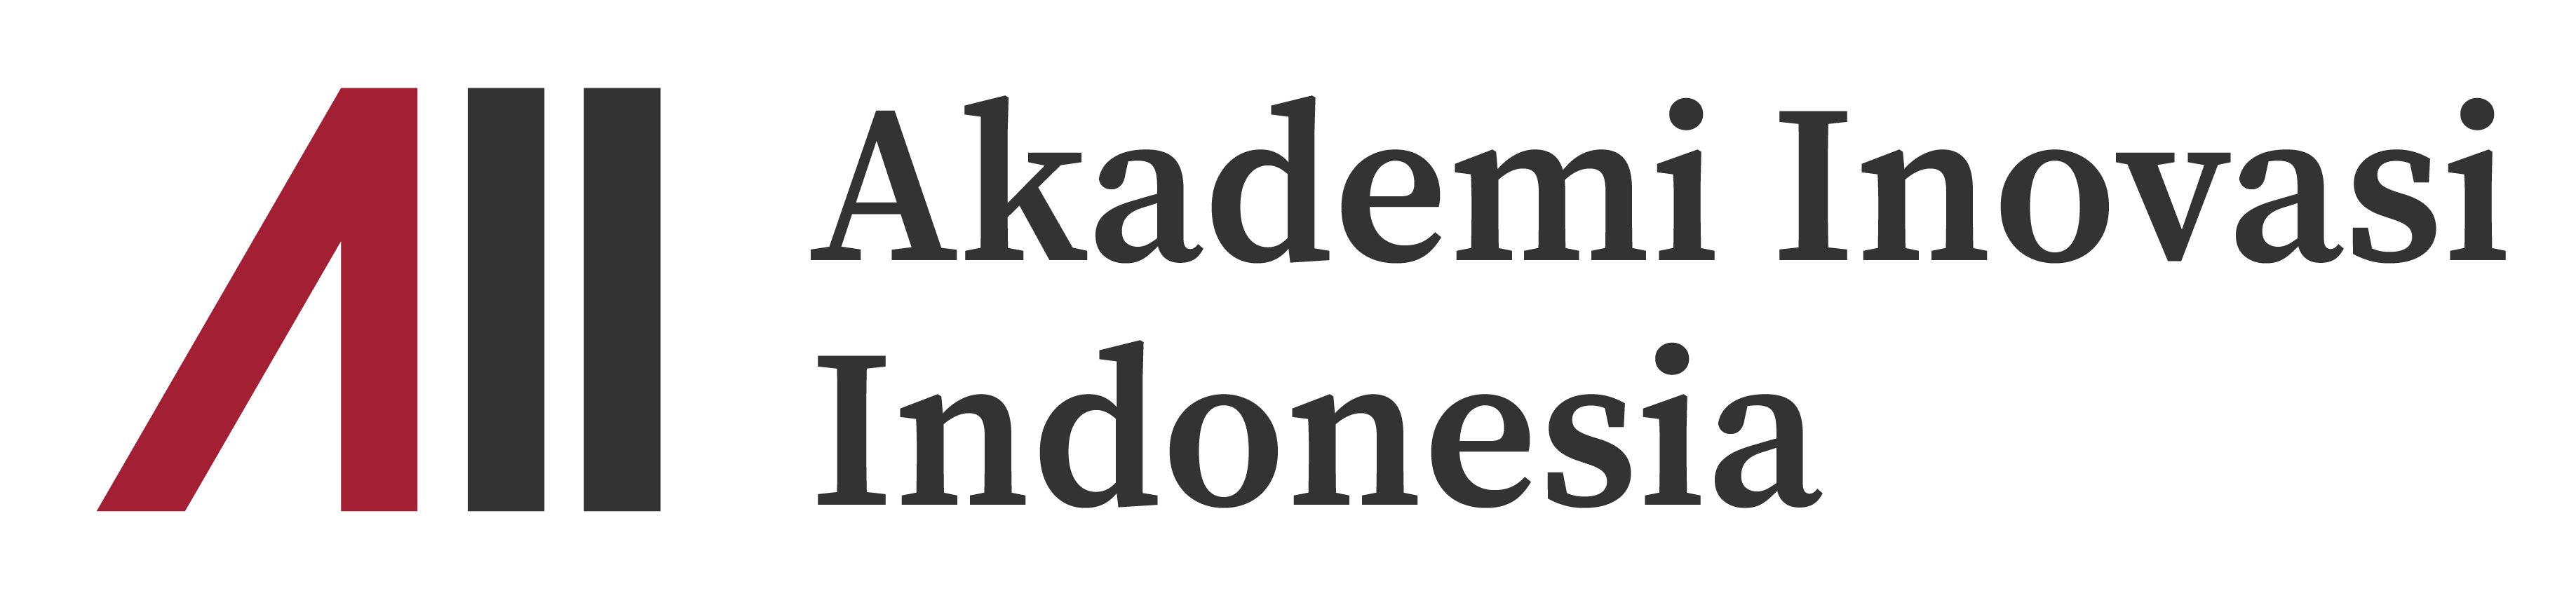 Akademi Inovasi Indonesia